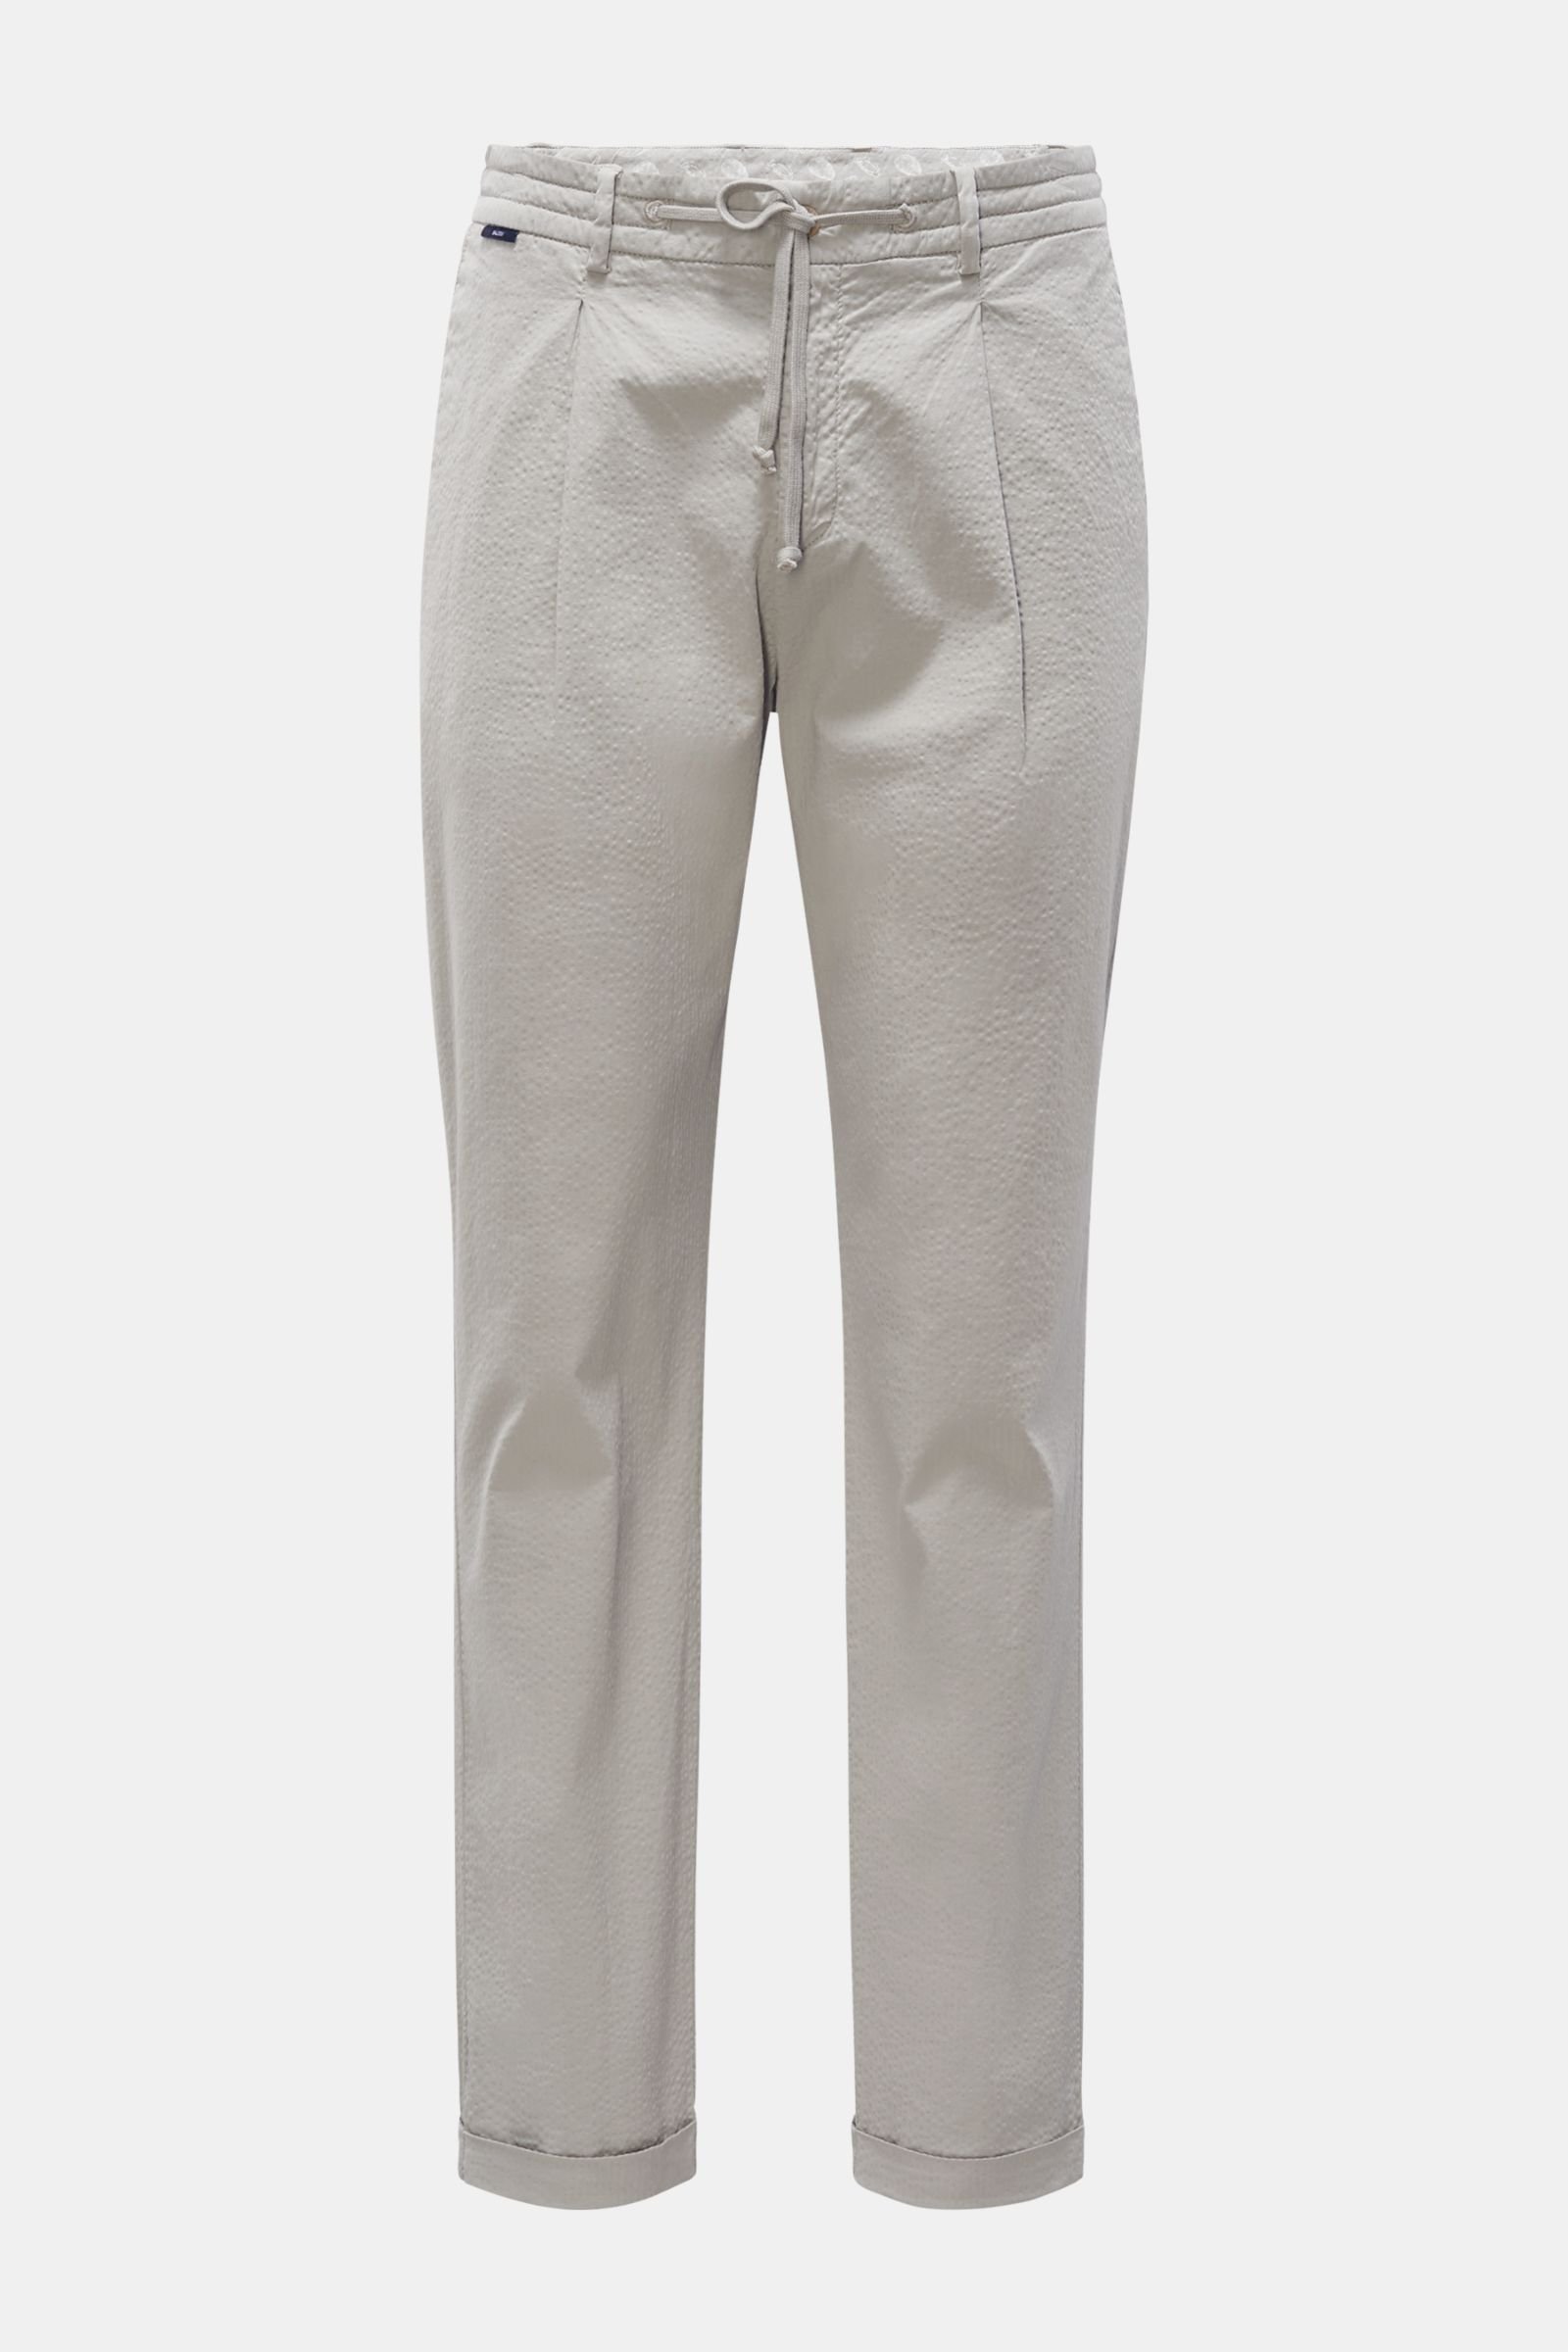 Seersucker jogger pants grey